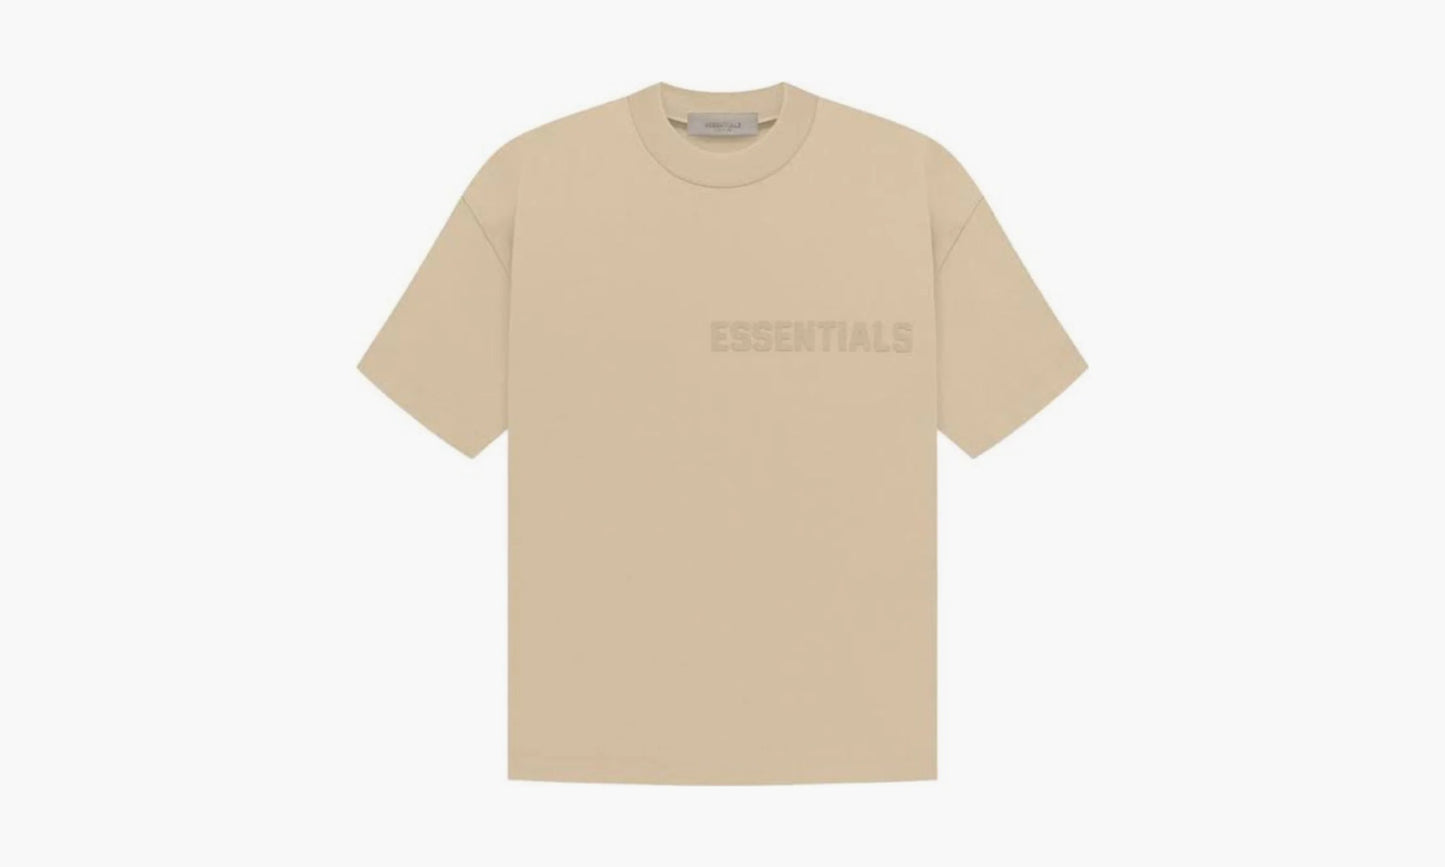 Fear Of God Essentials T-Shirt SS23 «Sand» - essential125BT222004F | Grailshop